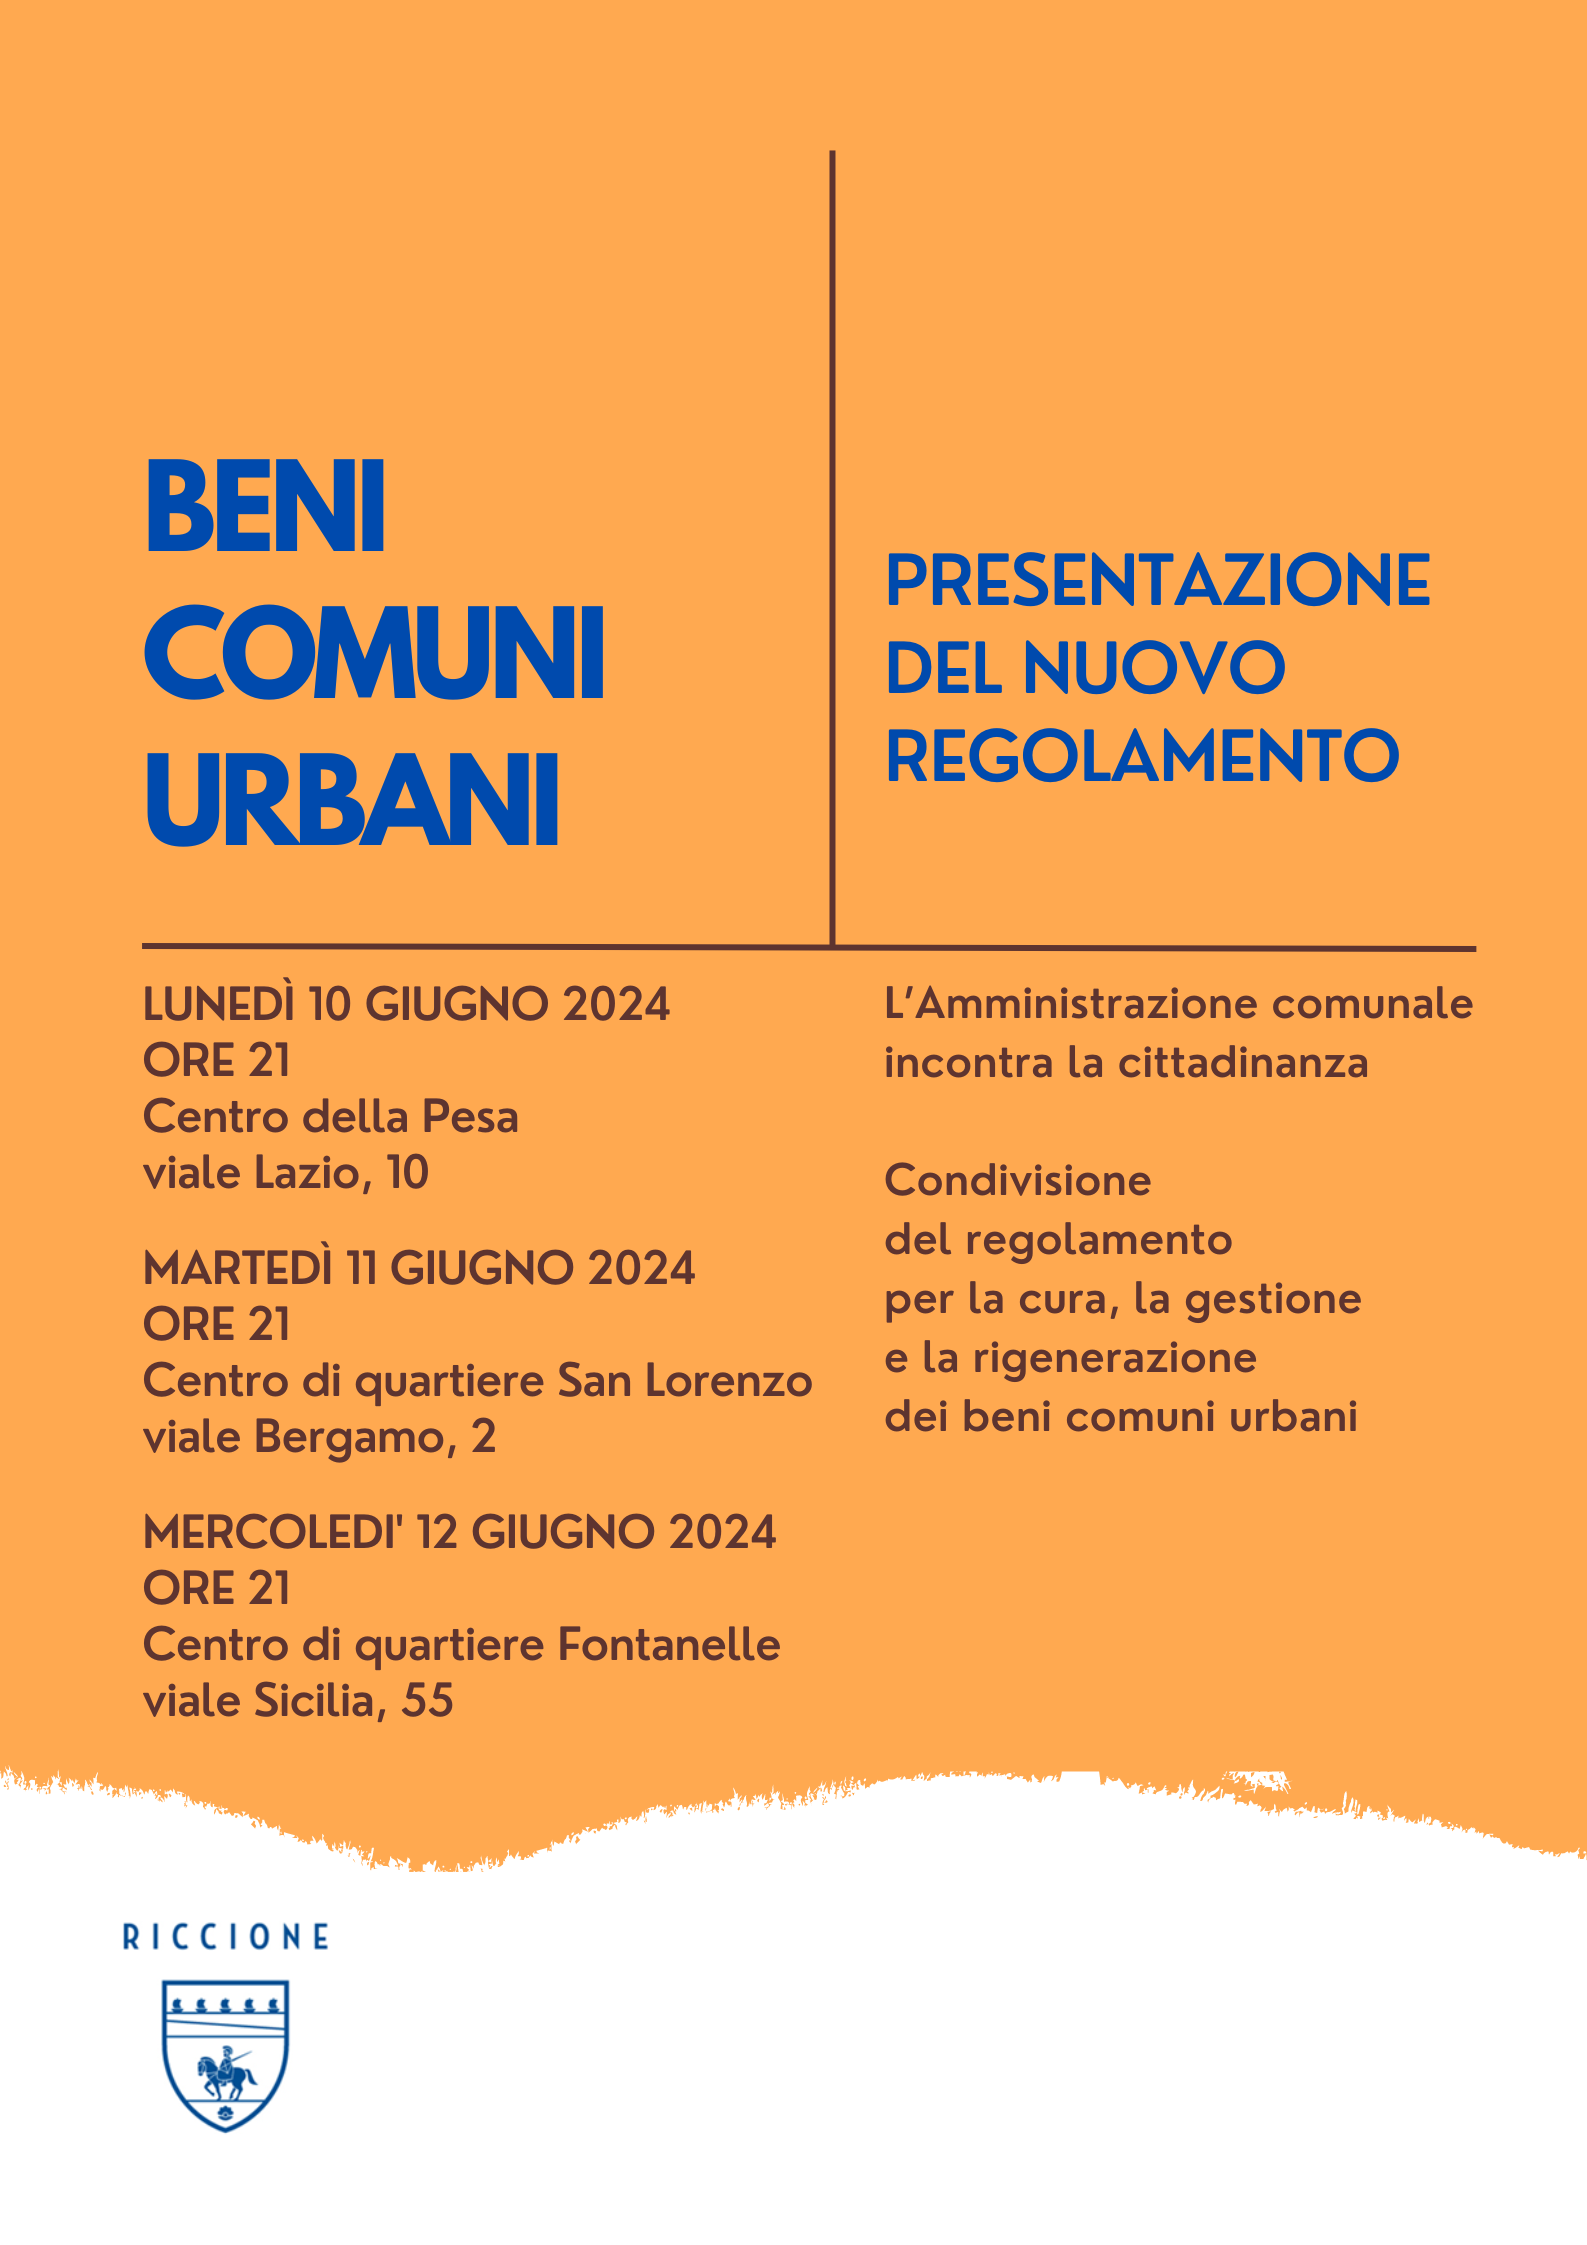 L’Amministrazione comunale di Riccione incontra i cittadini per condividere il nuovo regolamento sulla cura, la gestione e la rigenerazione dei beni comuni urbani